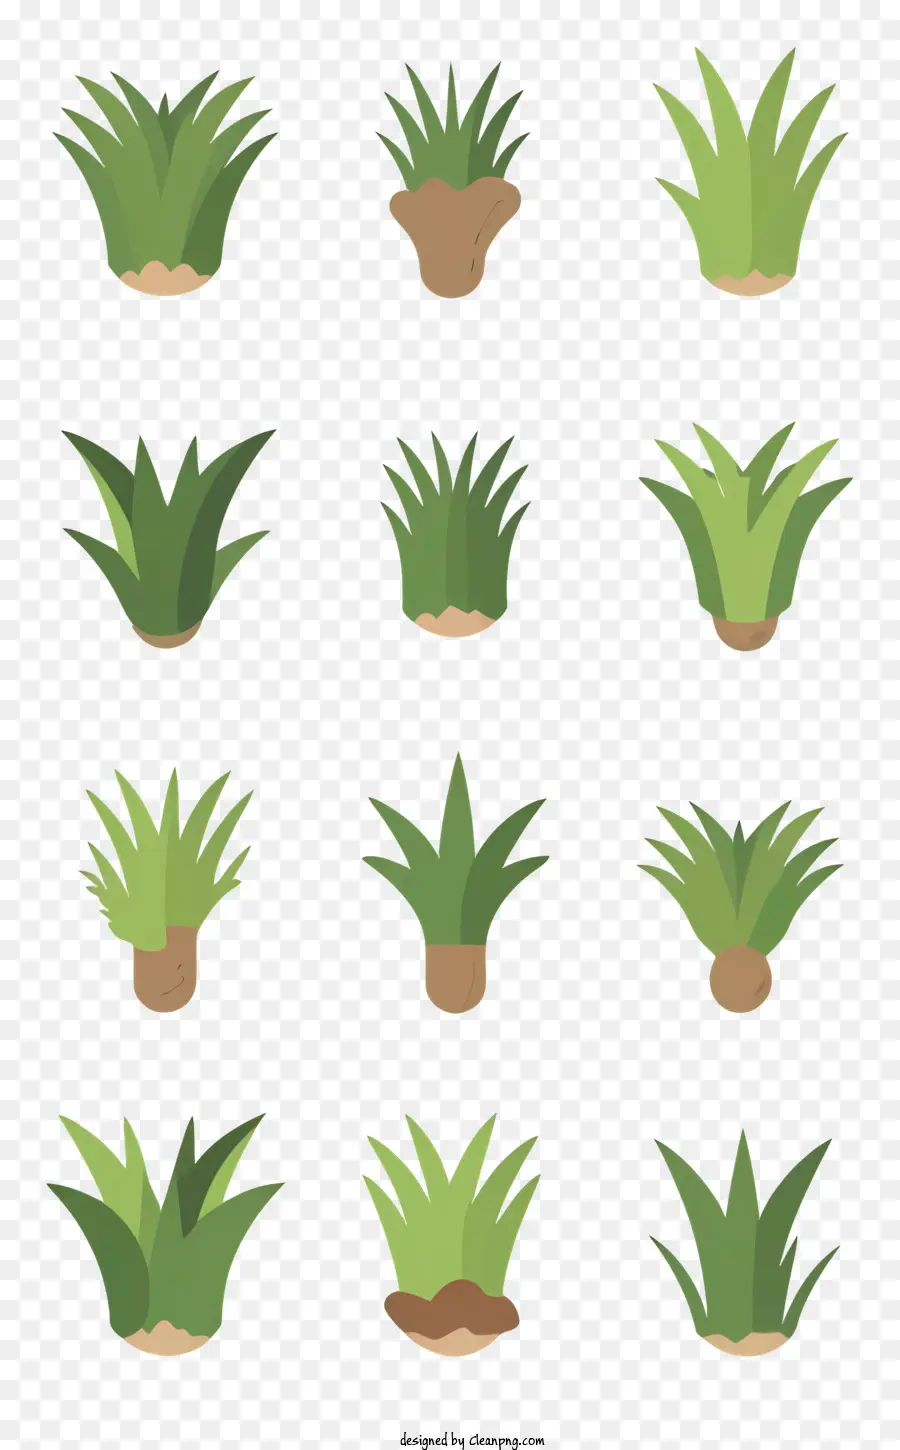 thực vật có hình dạng khác nhau có kích thước khác nhau kết cấu - Hình ảnh đơn giản về các loại cây đa dạng trên nền đen